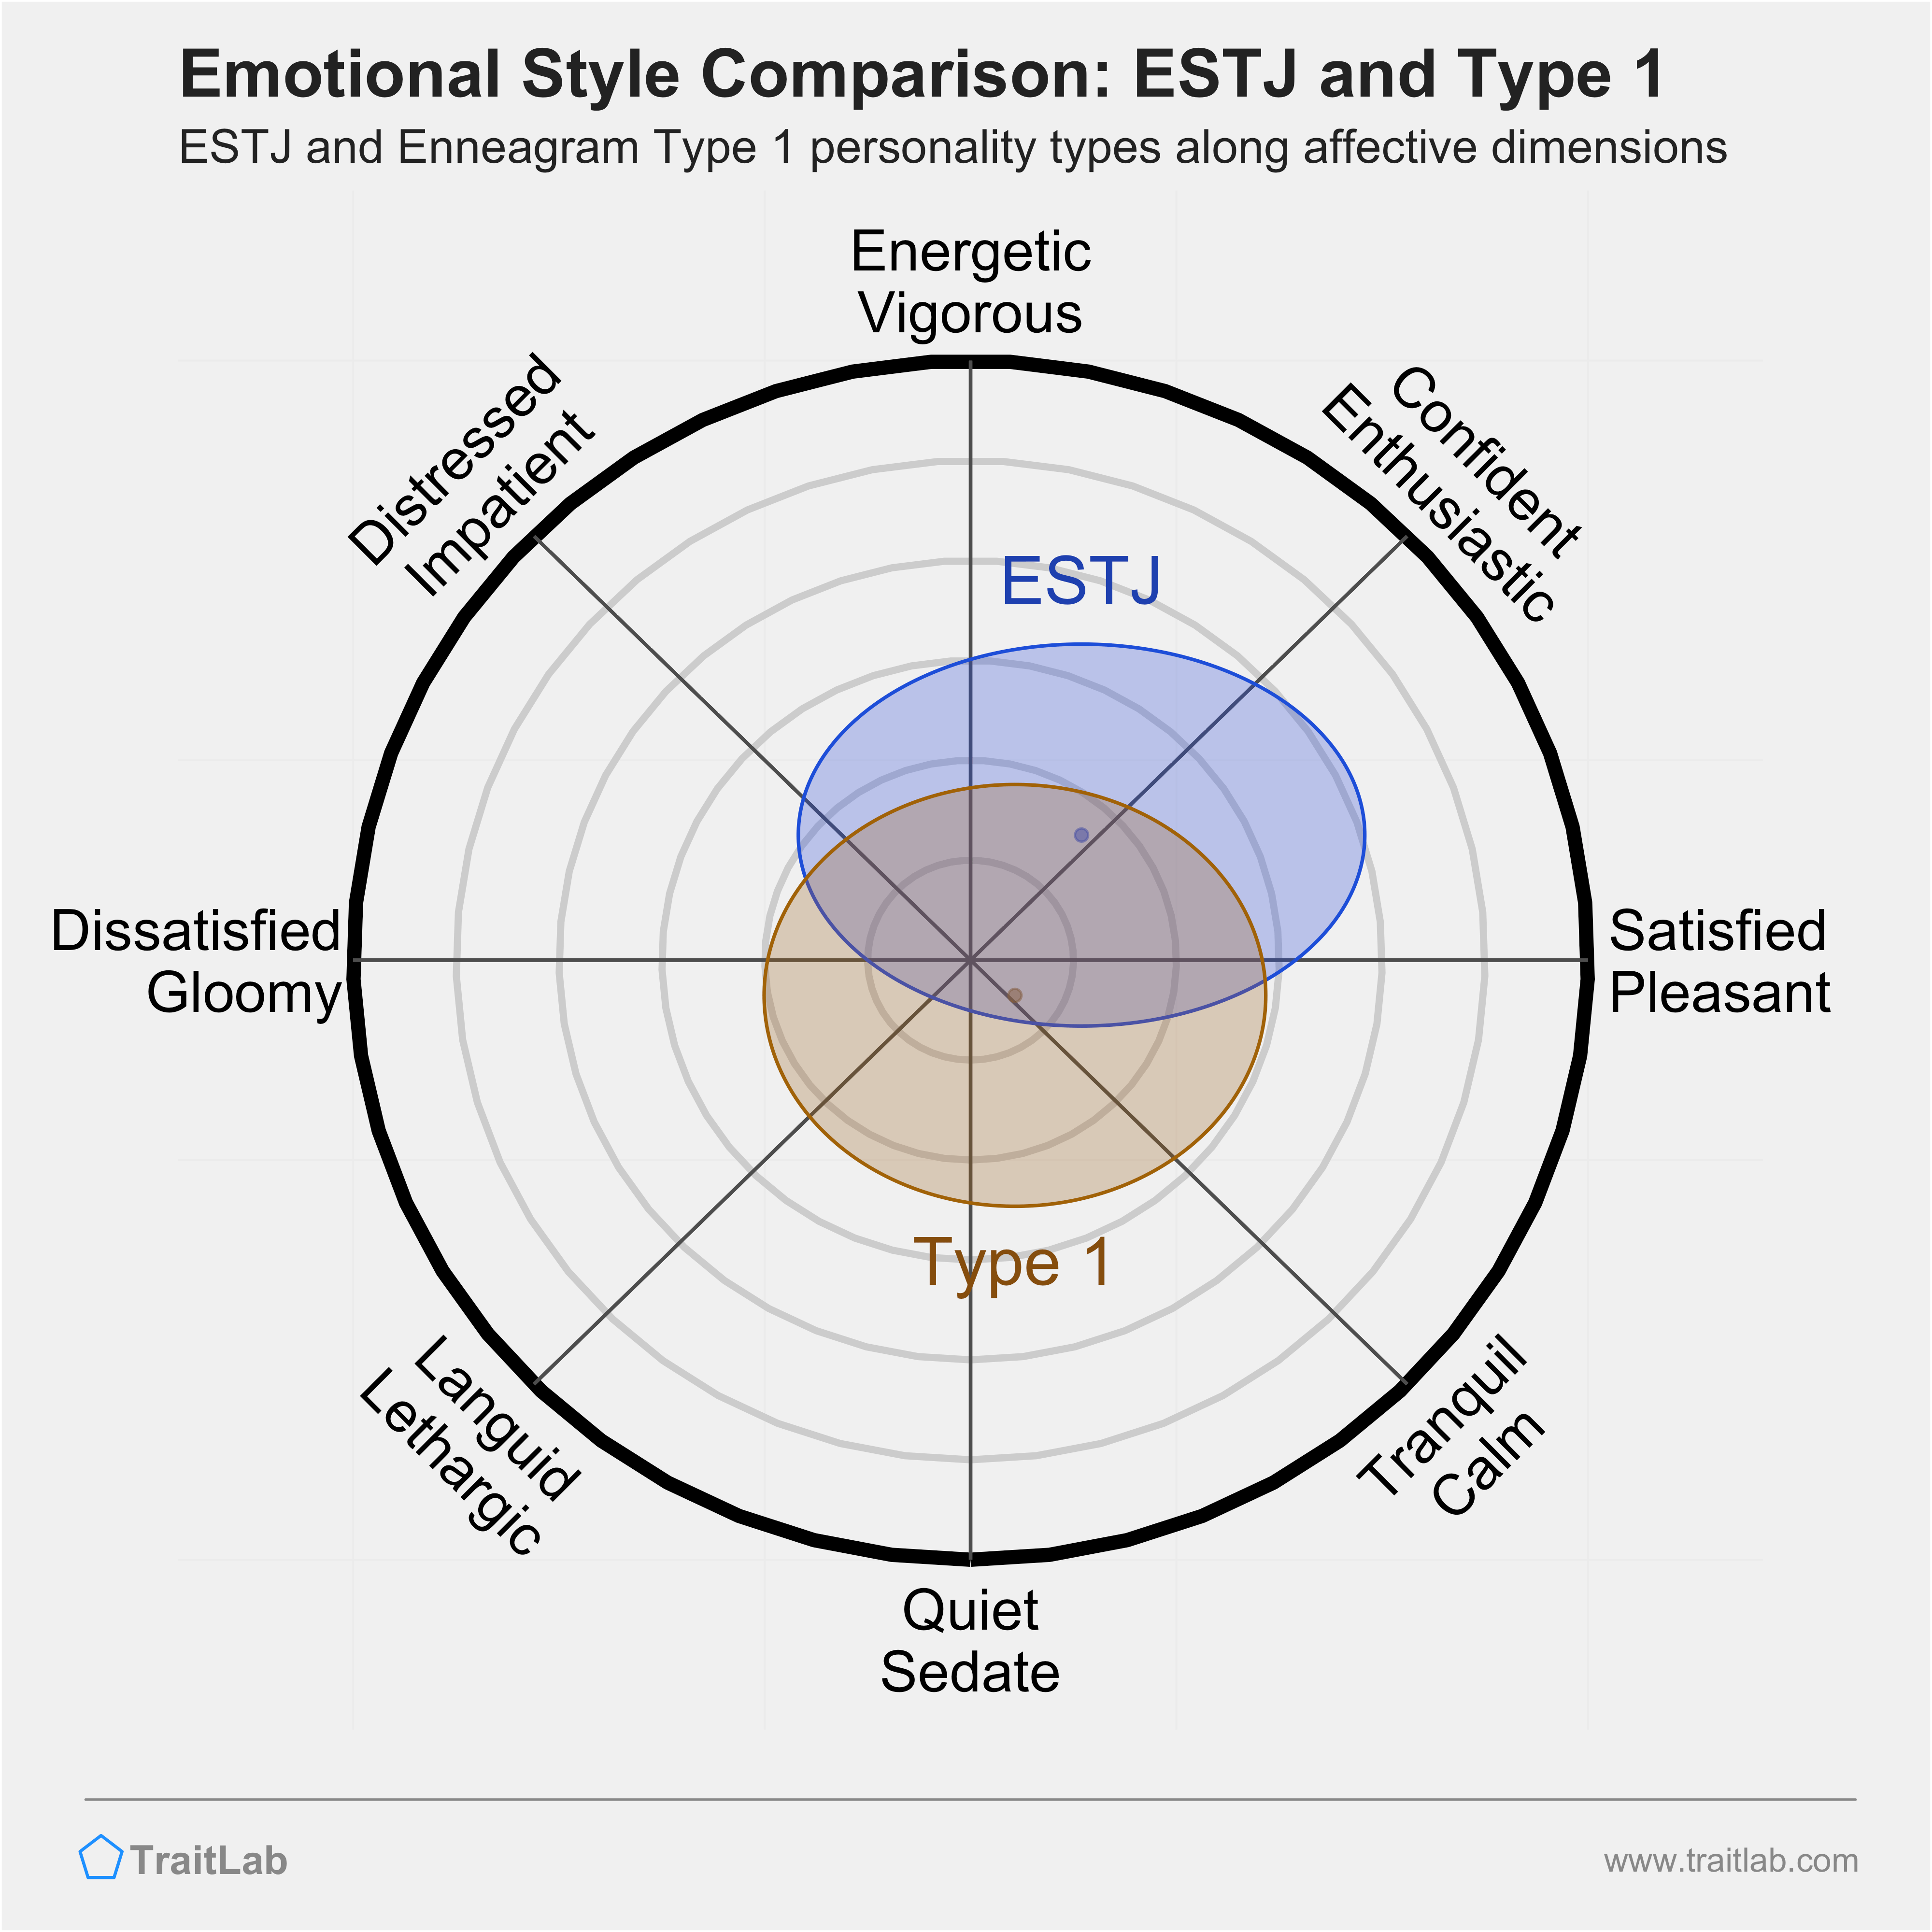 ESTJ and Type 1 comparison across emotional (affective) dimensions